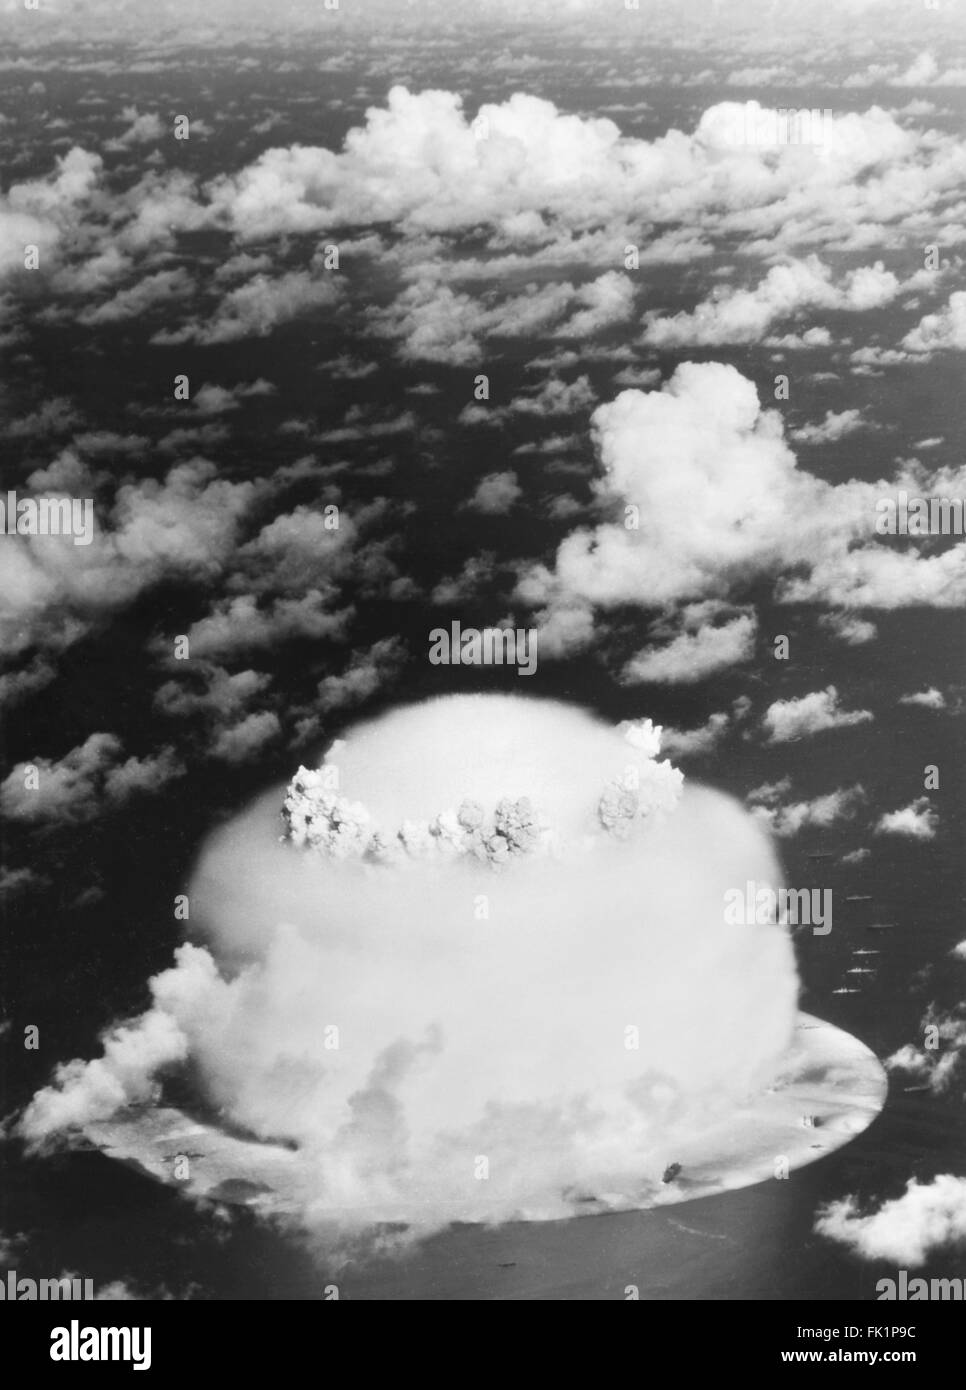 Cloud a fungo dal funzionamento crocevia di armi nucleari a prova di Bikini Atoll, Isole Marshall, Oceano Pacifico nel luglio/agosto 1946. Foto Stock